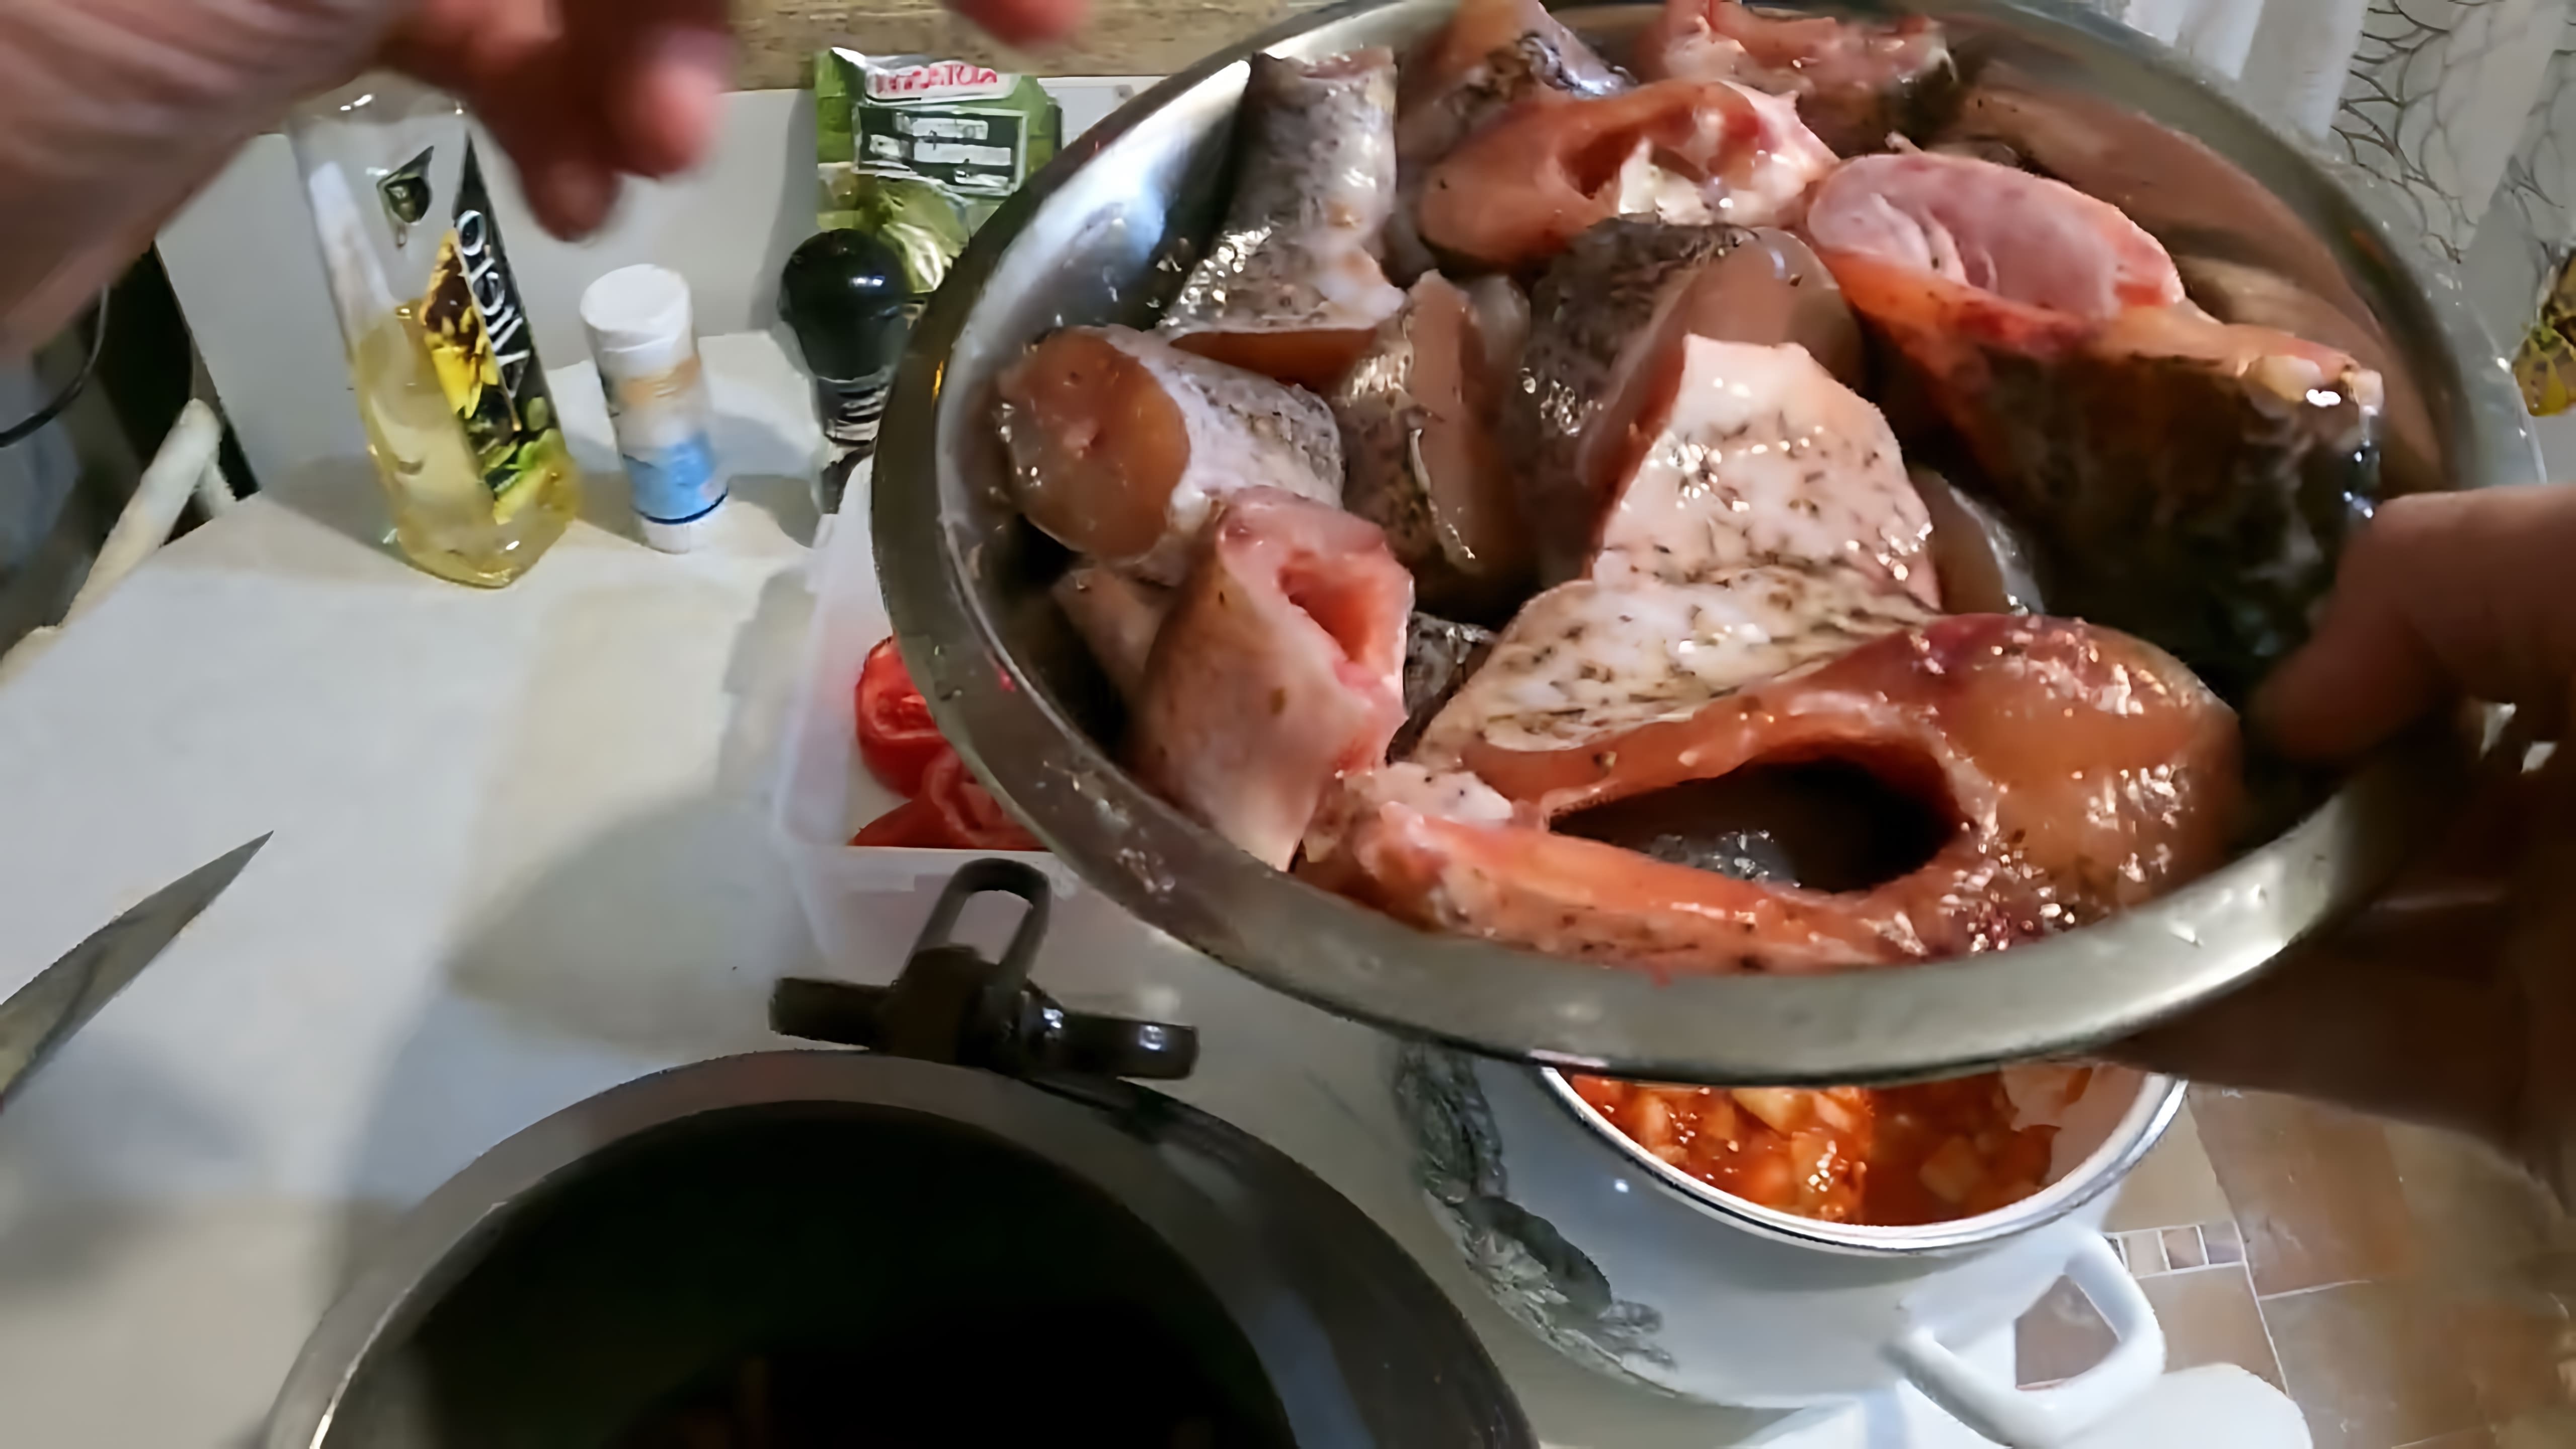 В данном видео демонстрируется процесс приготовления рыбы в афганском казане